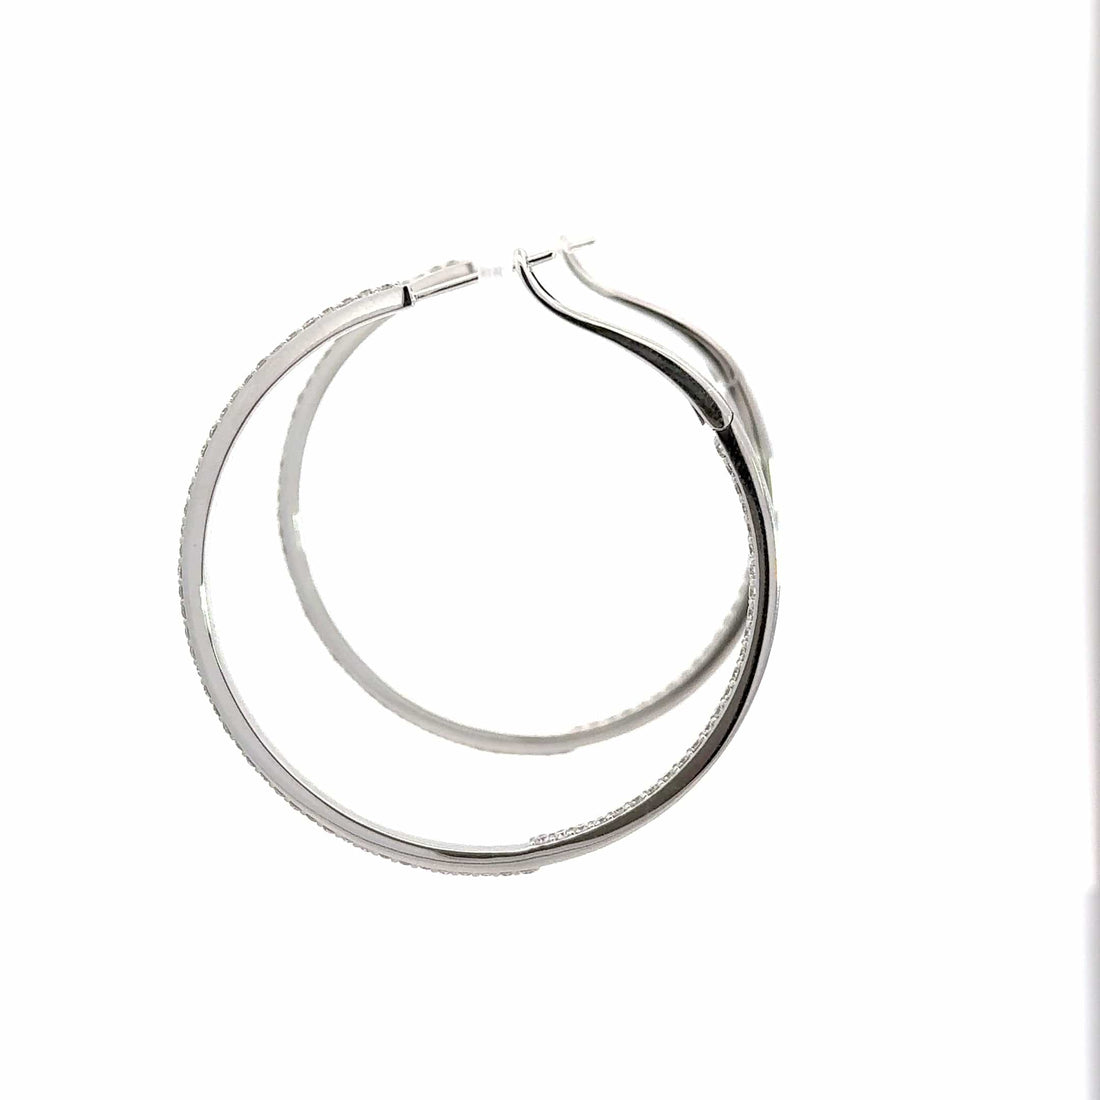 Baikalla Jewelry Silver Gemstone Earrings Baikalla 14k White Gold Diamond Hoop Earrings